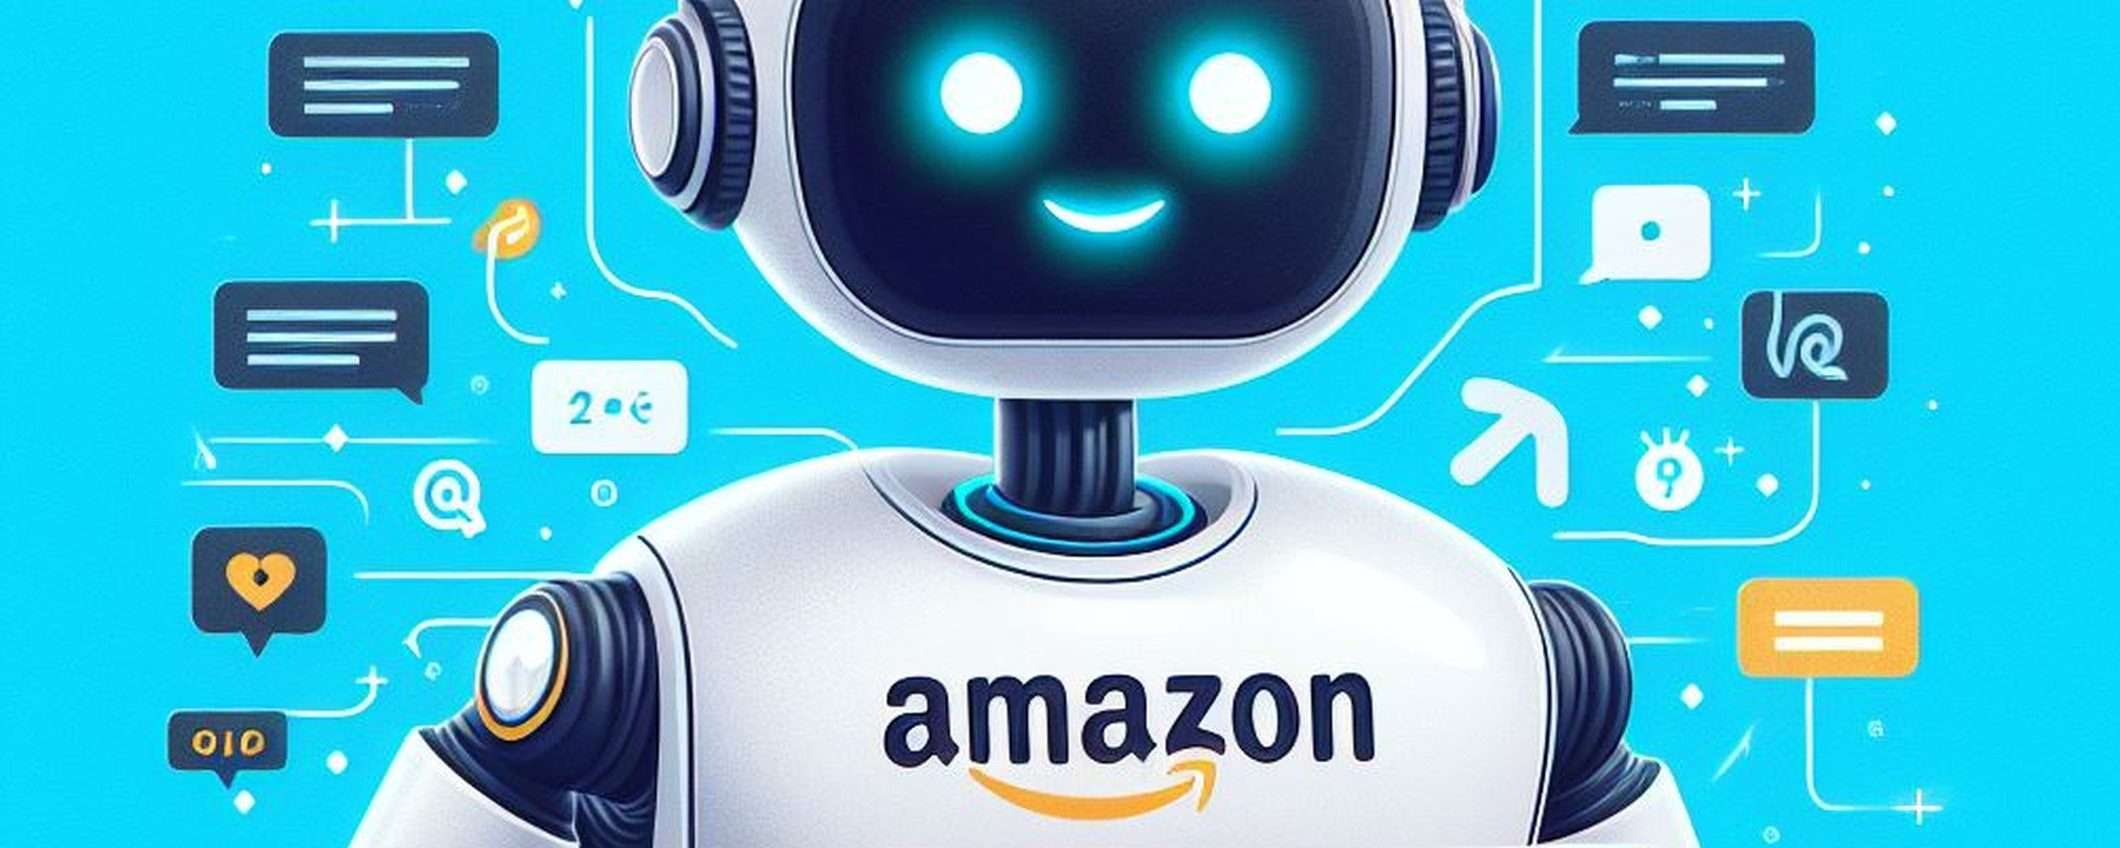 Amazon testa un tool IA che risponde alle domande